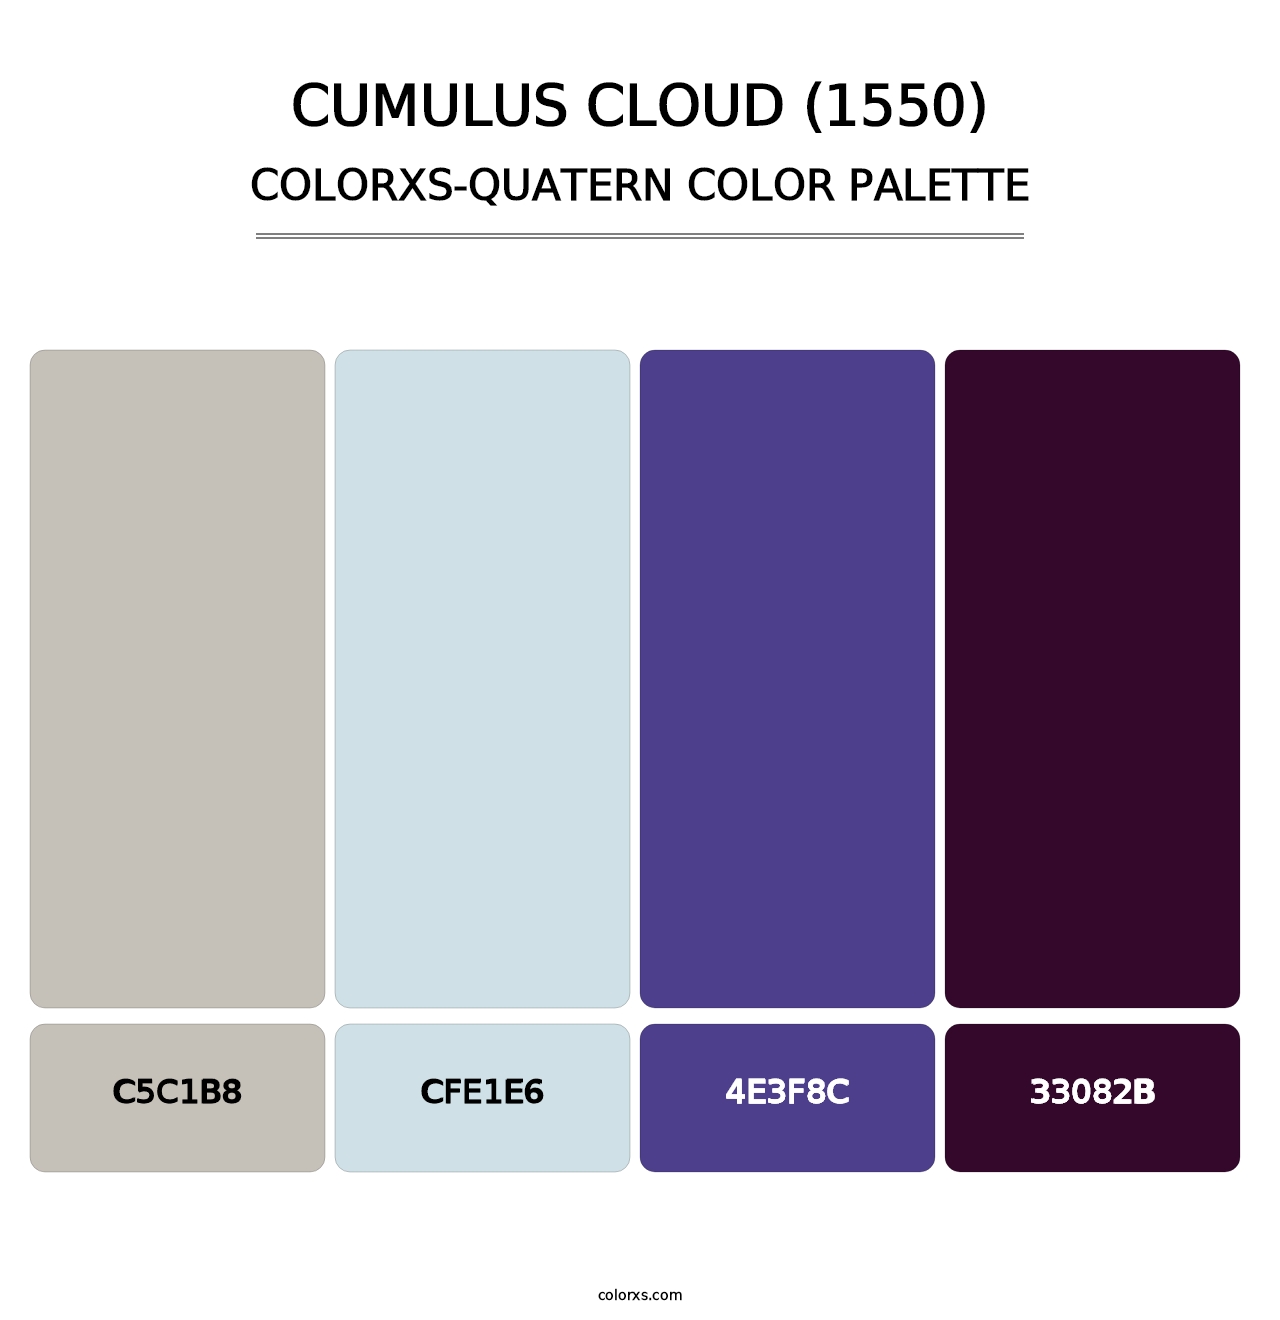 Cumulus Cloud (1550) - Colorxs Quatern Palette